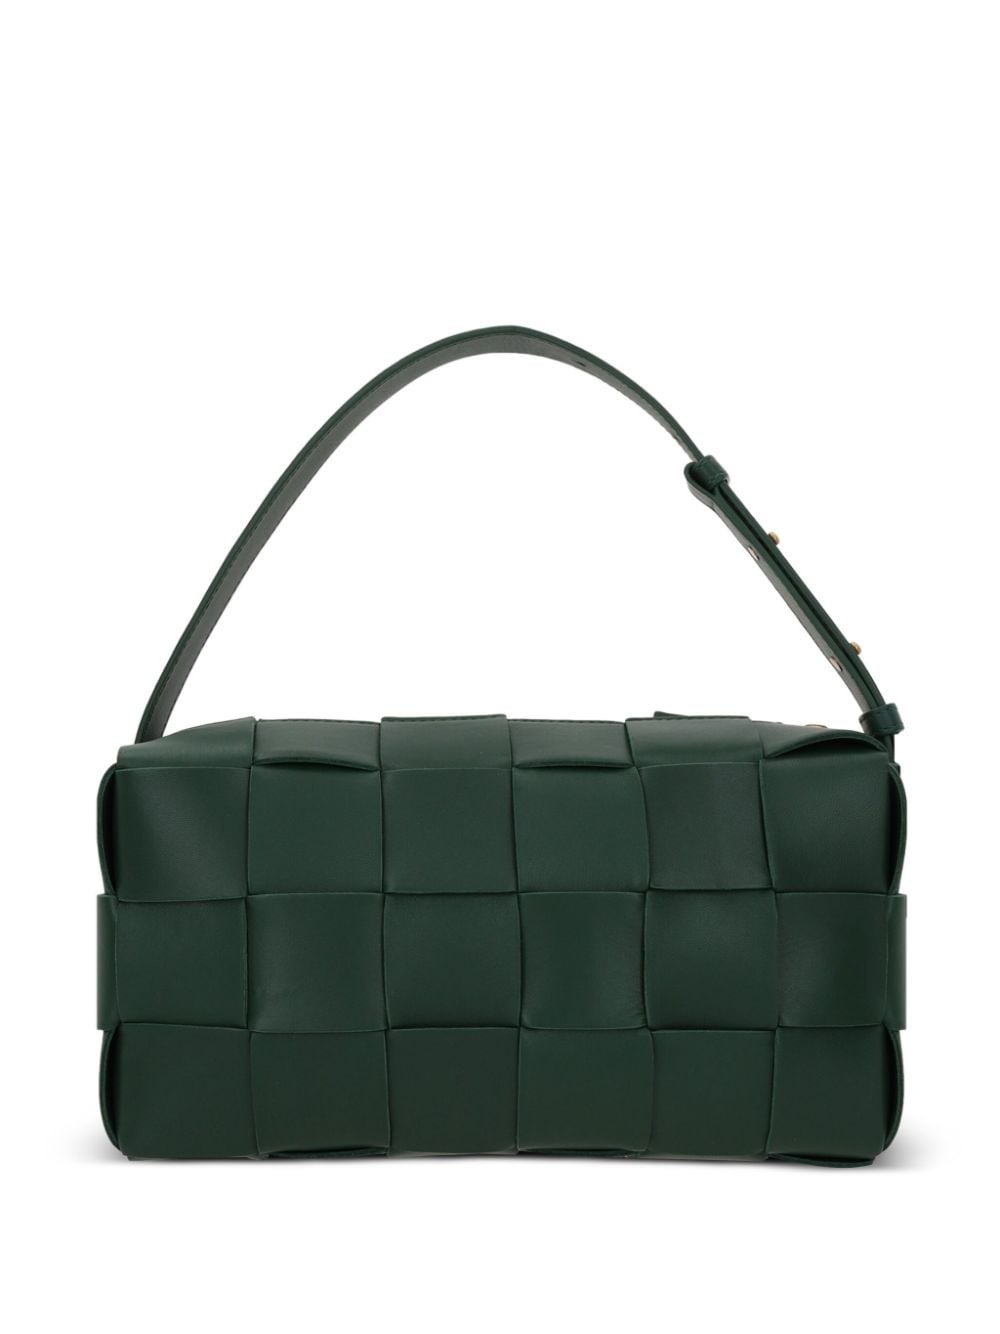 Bottega Veneta Brick Cassette leather shoulder bag - Groen